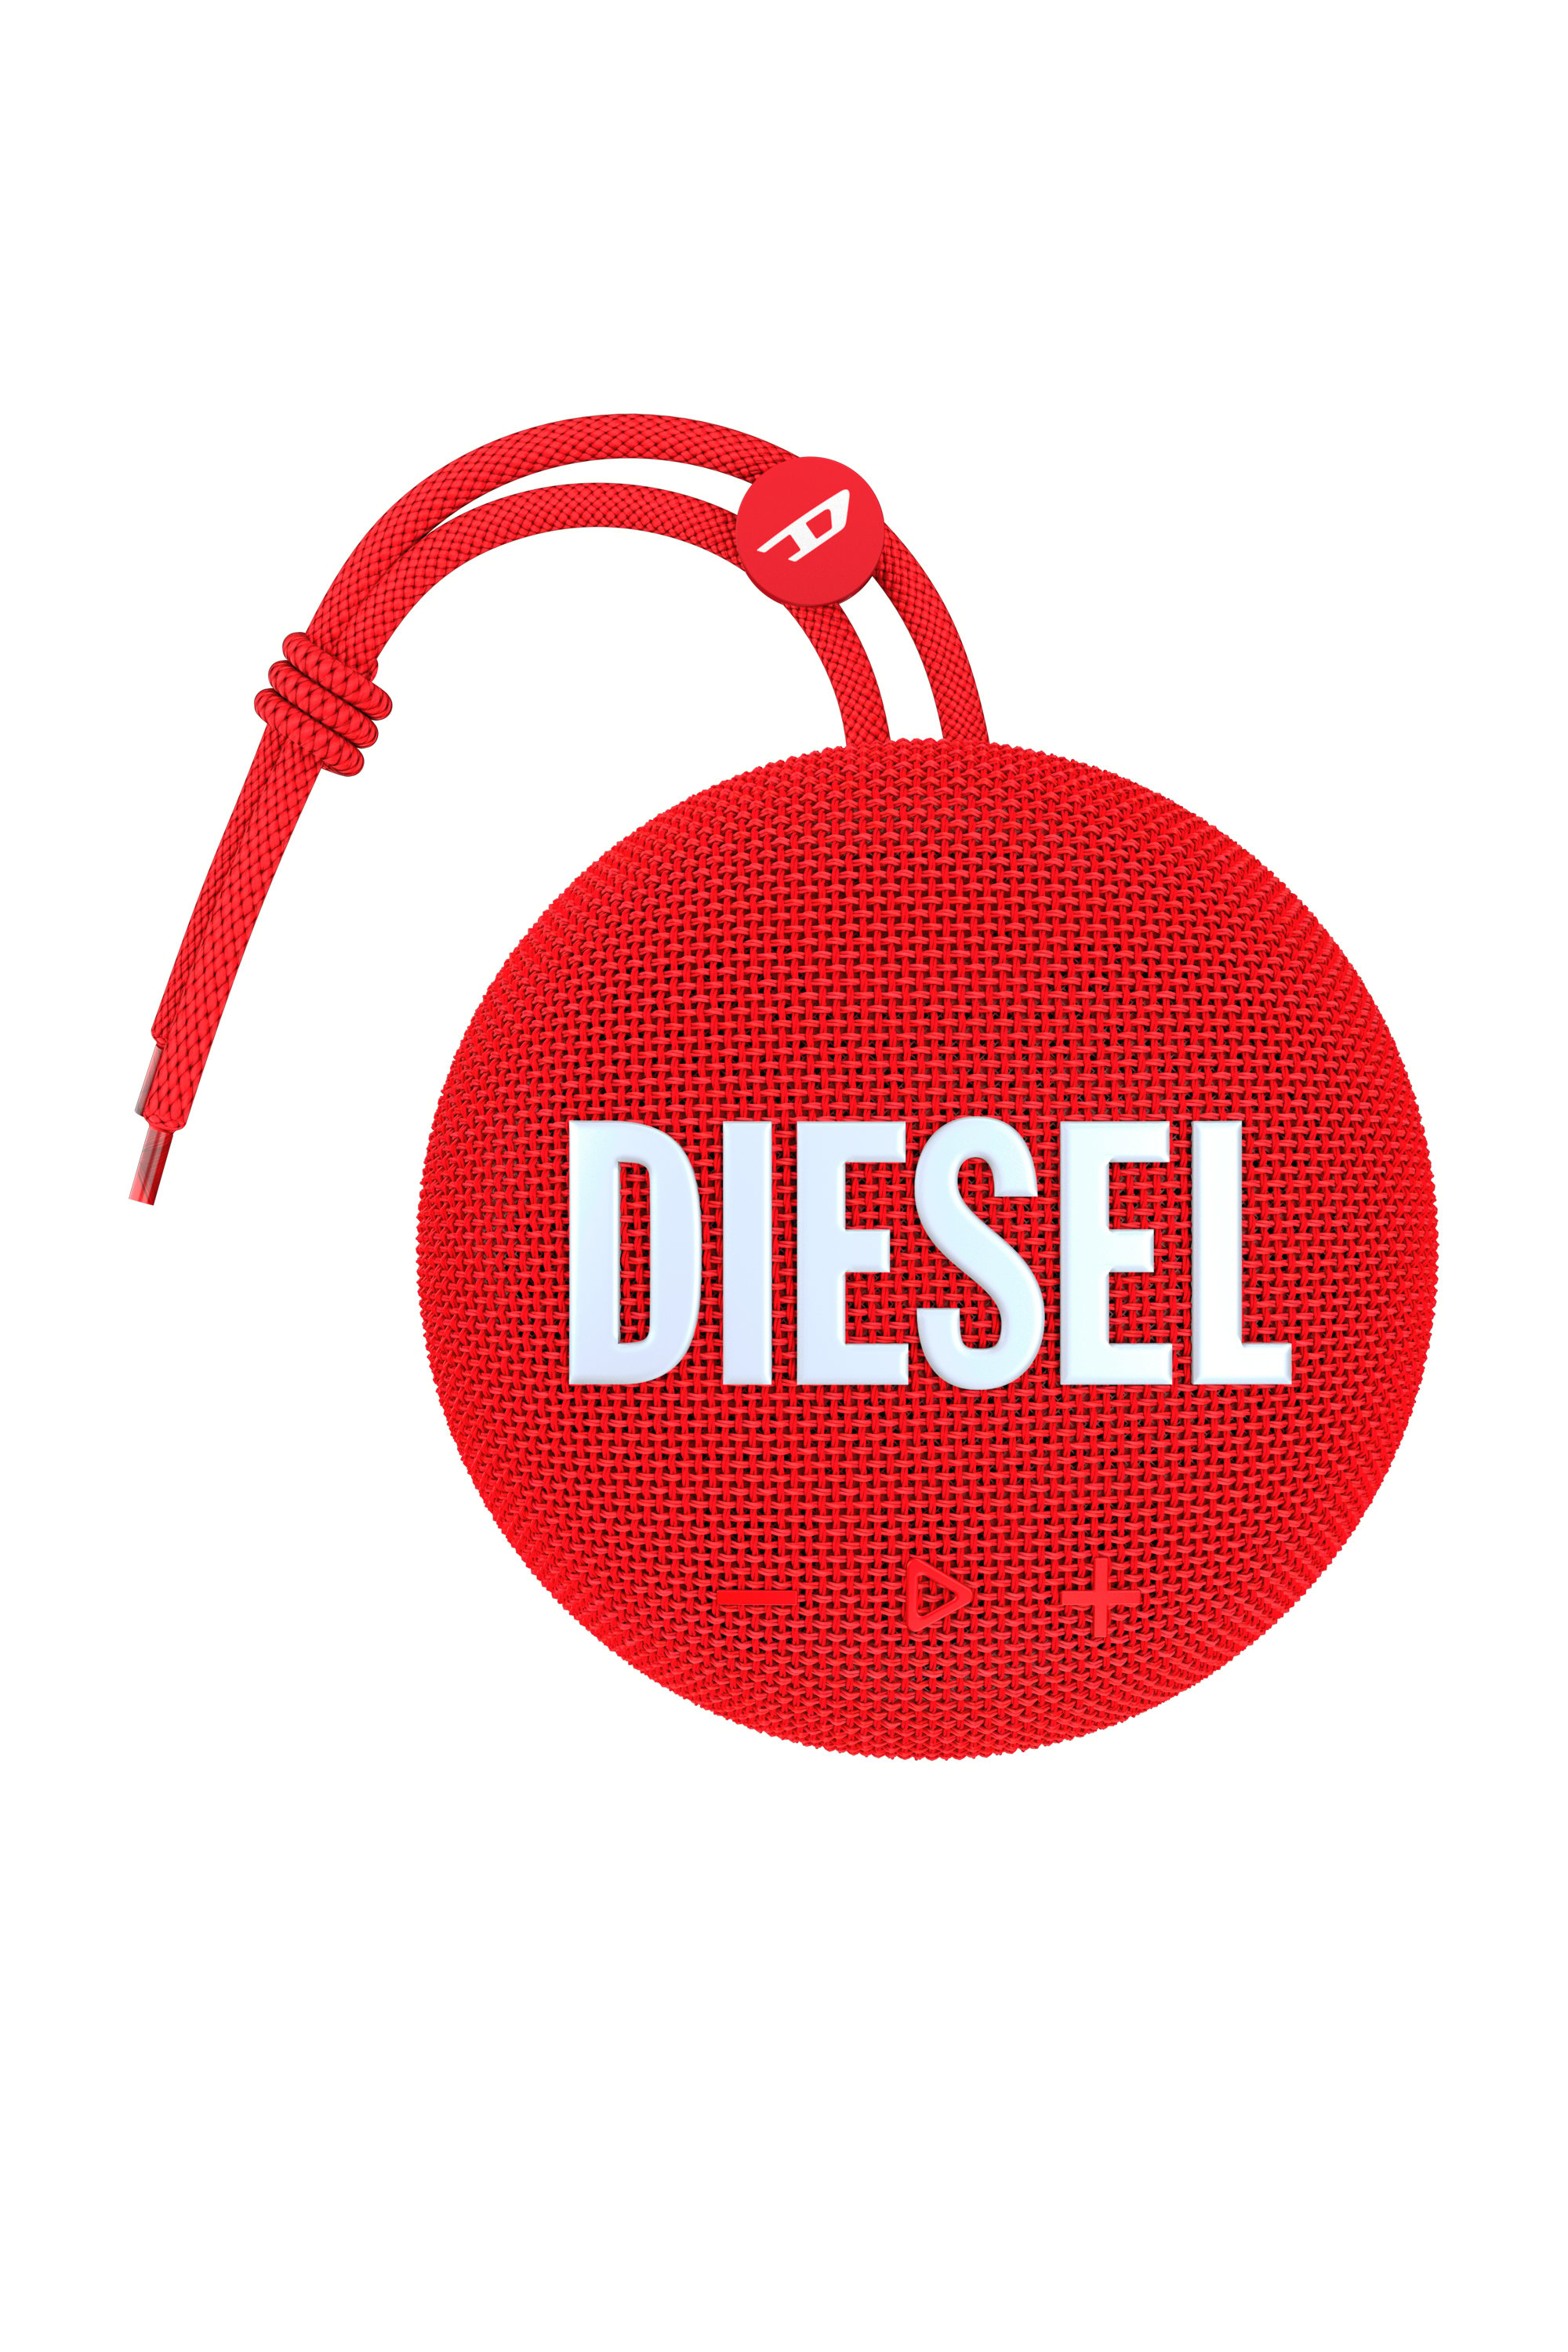 Diesel - 52954 BLUETOOTH SPEAKER, Red - Image 1